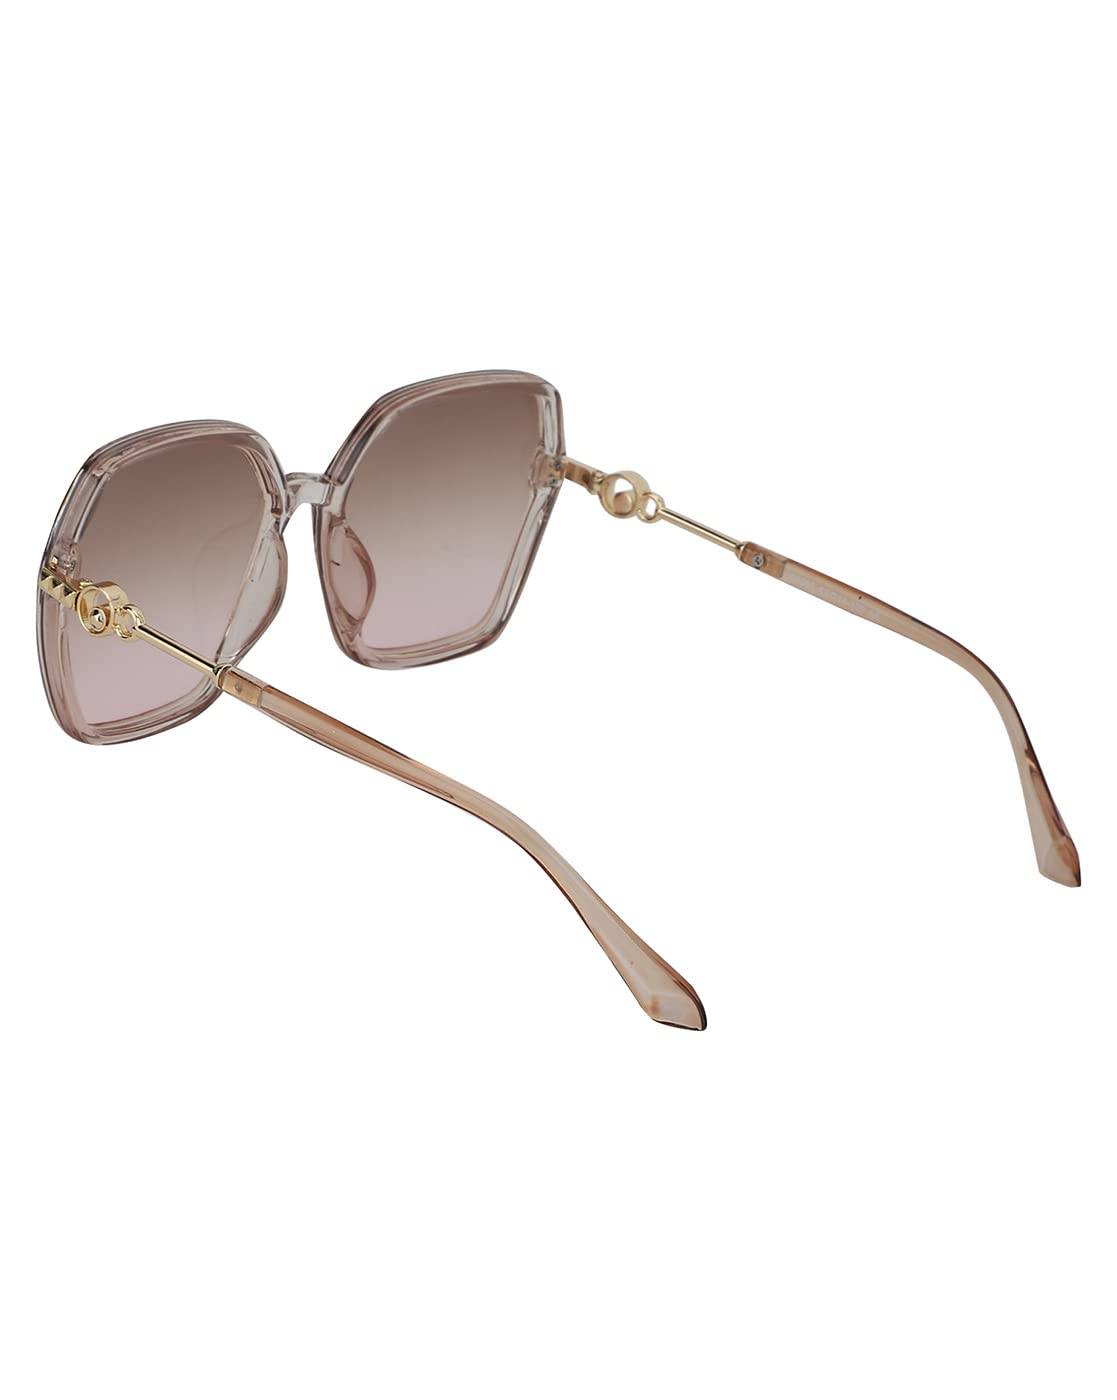 Carlton London Women UV Protected Lens Oversized Sunglasses